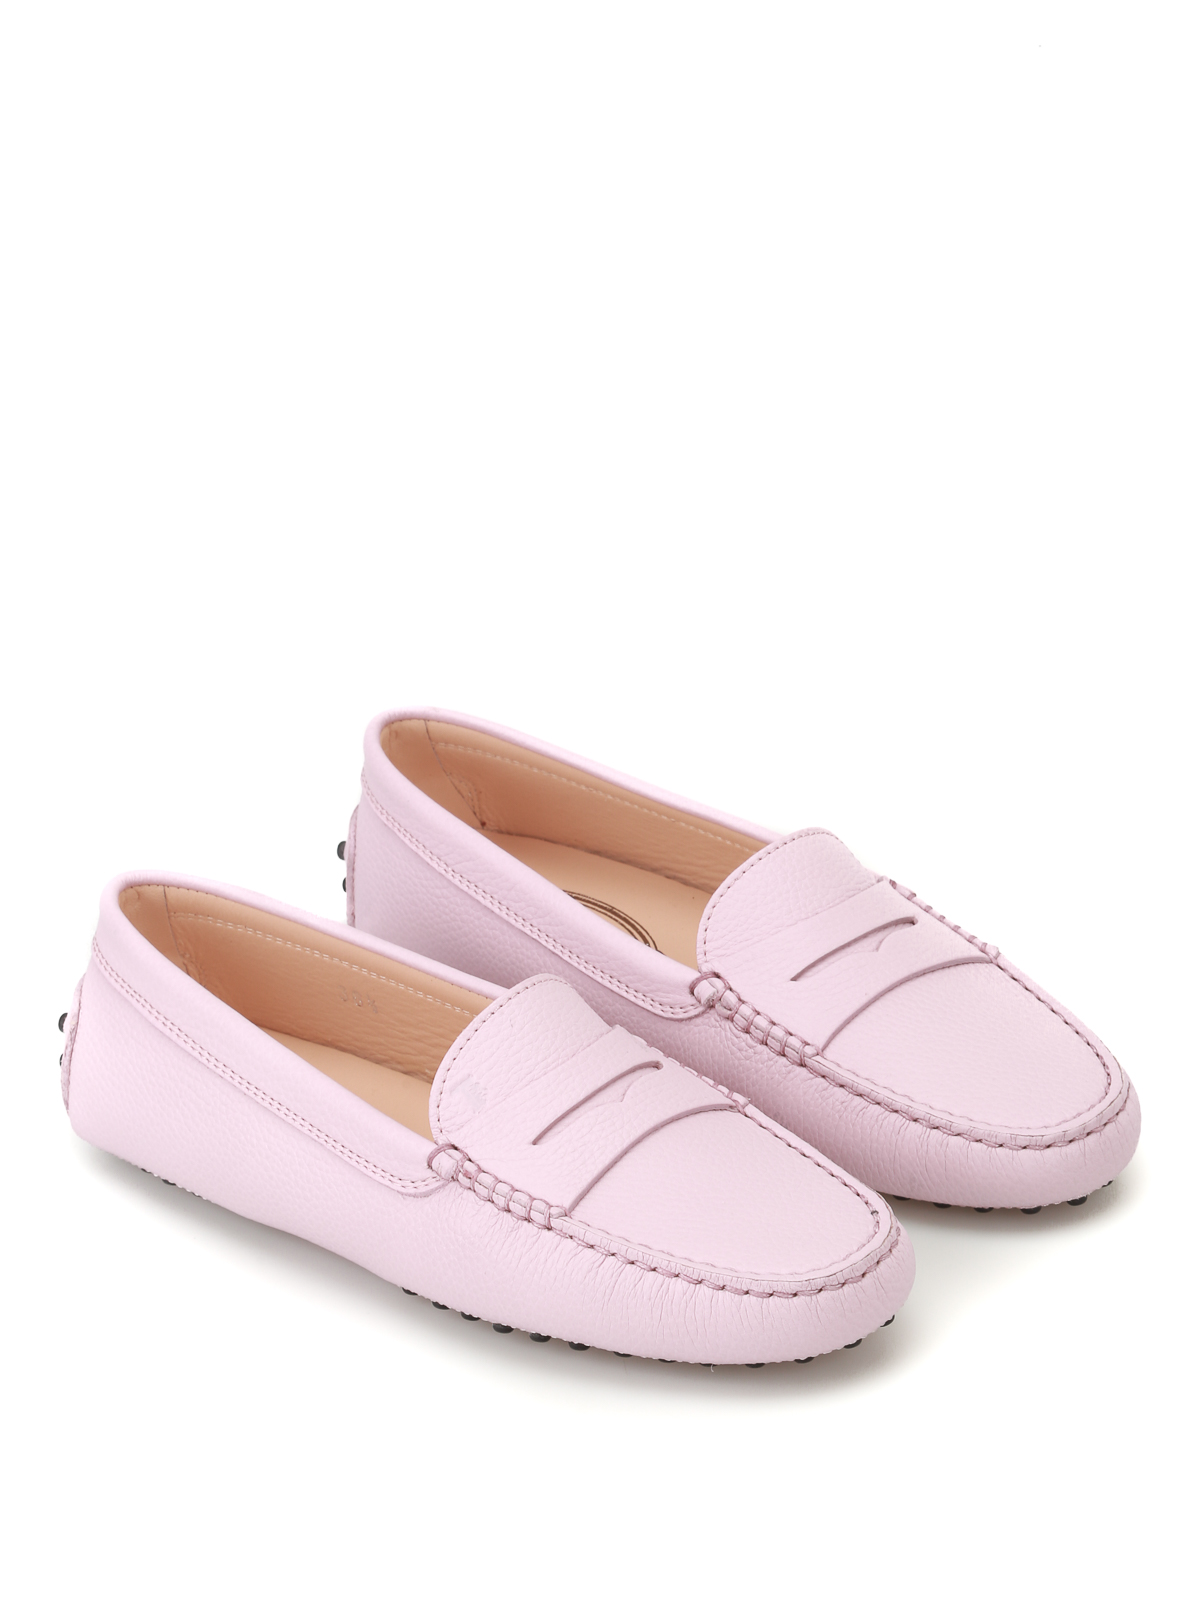 Schuhe Mokassins Mokassins pink Casual-Look 